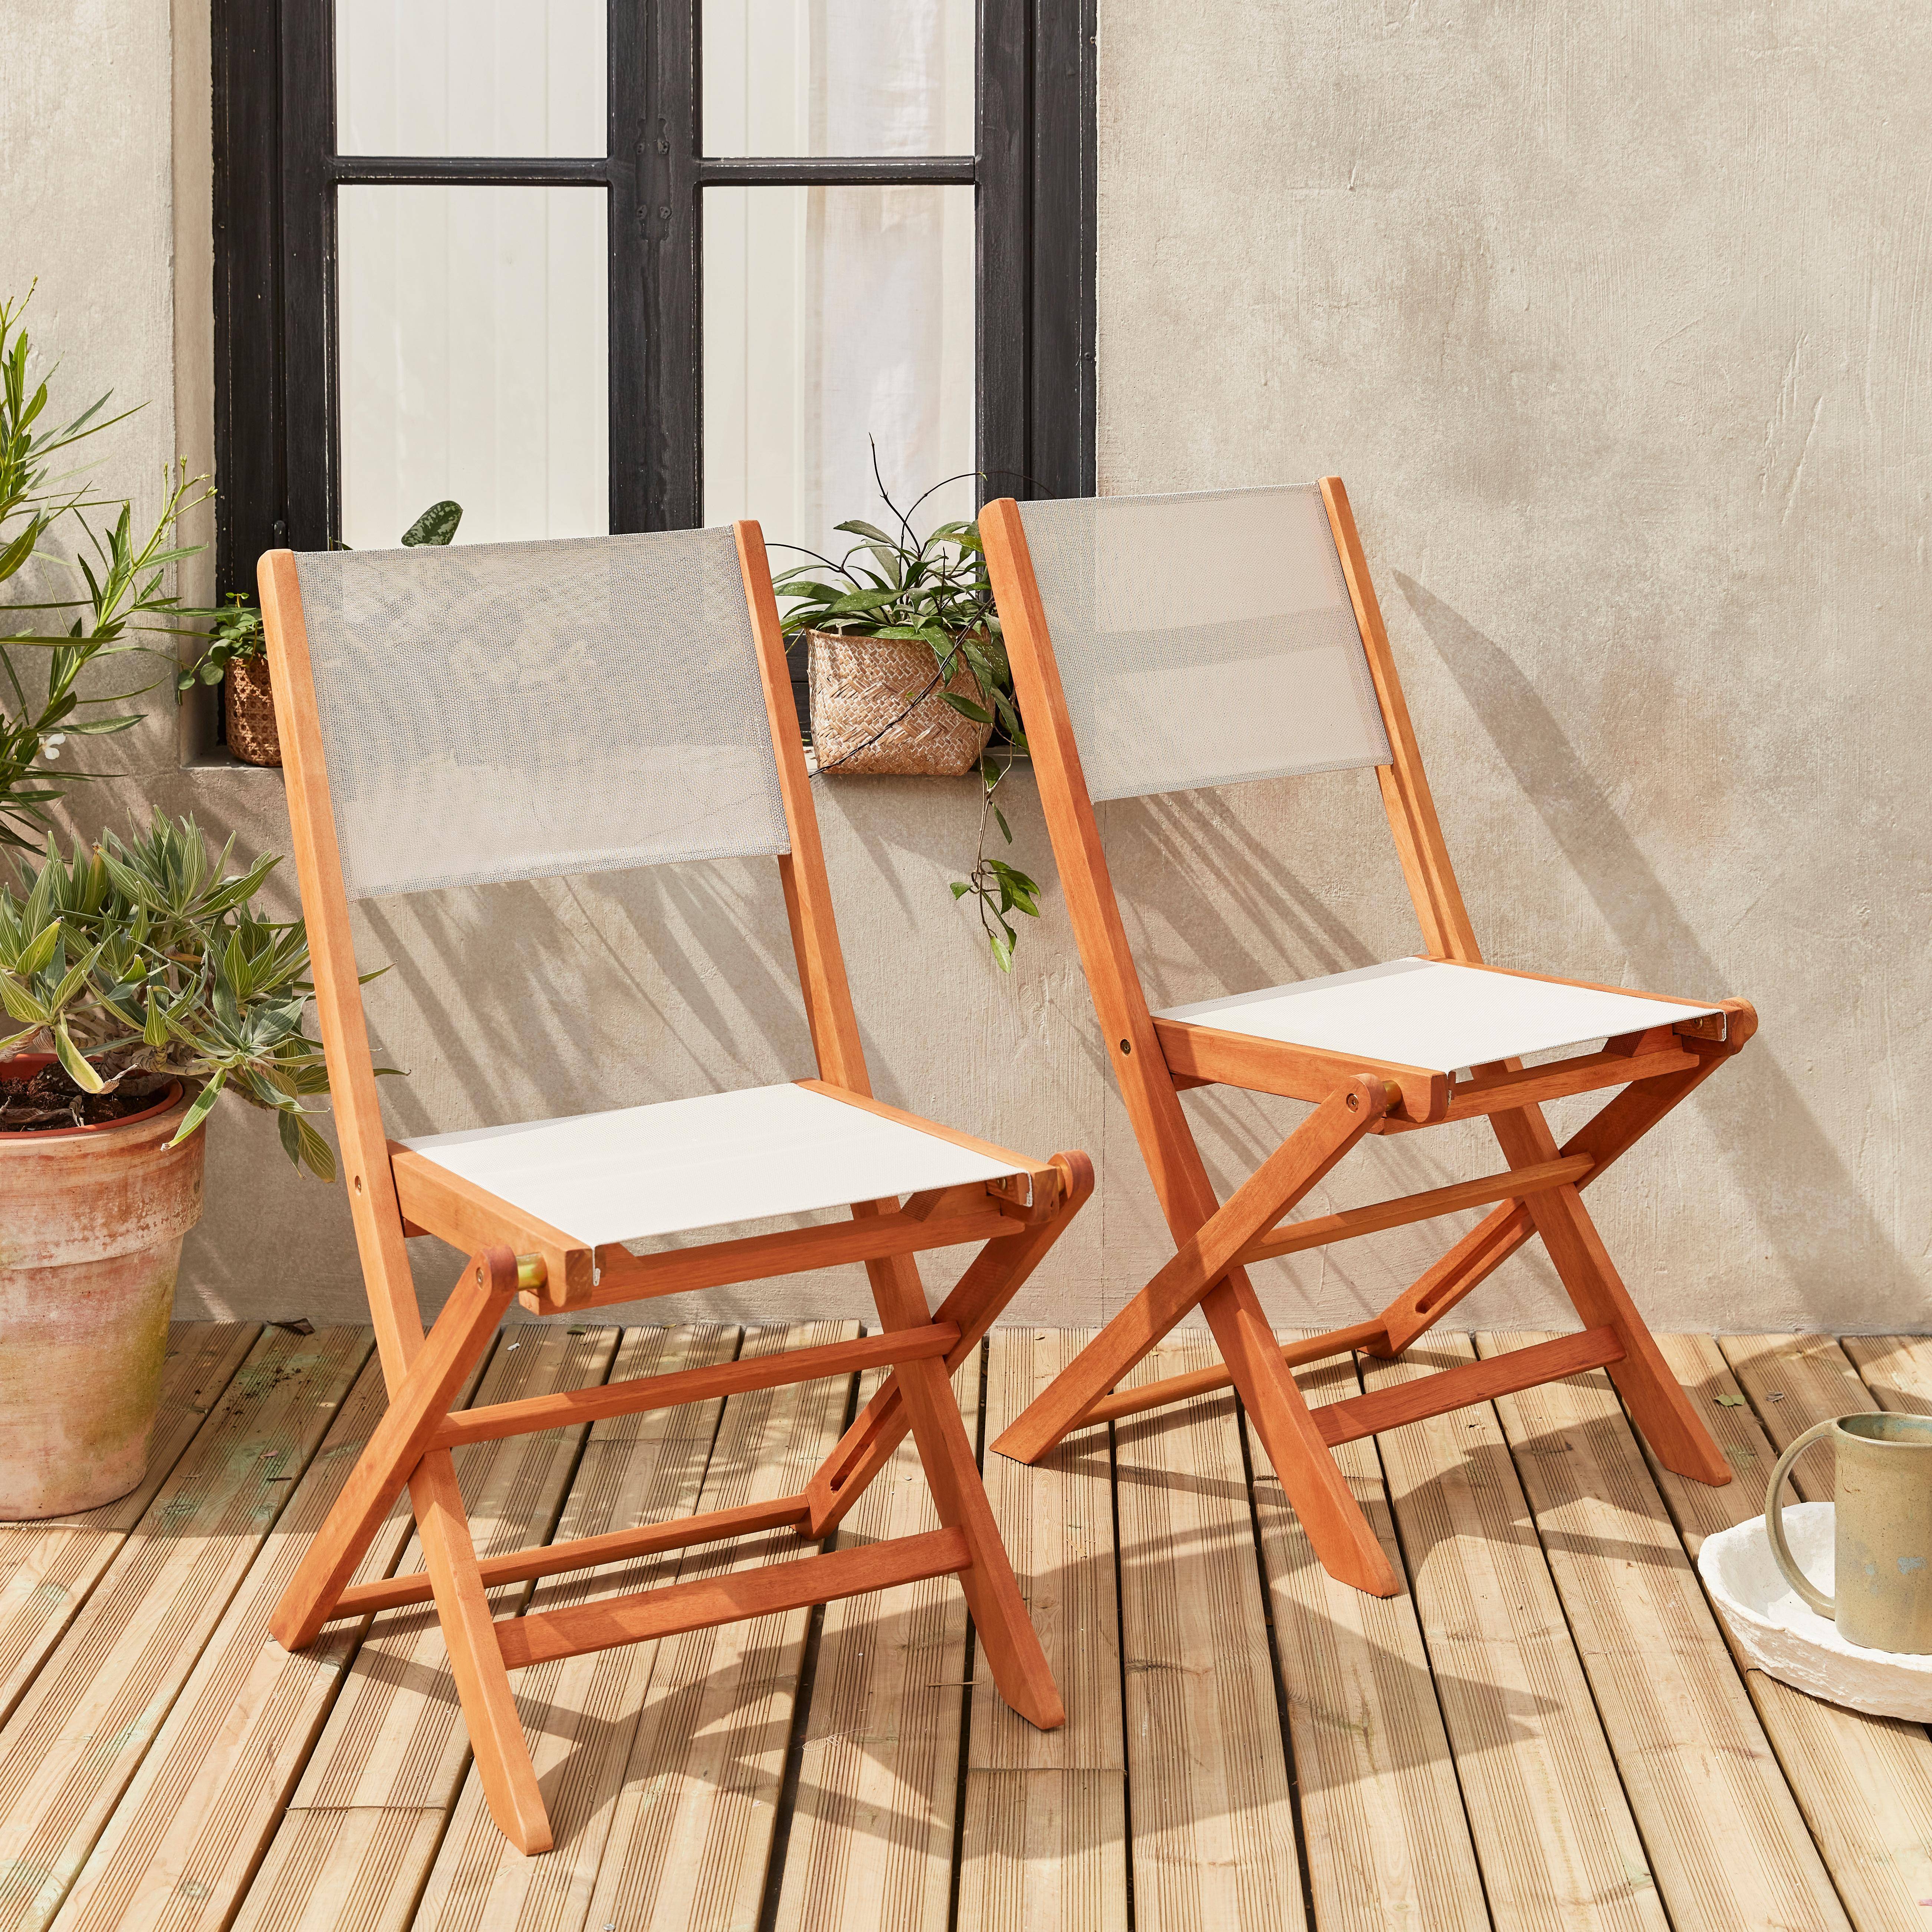 Sedie da giardino, in legno e textilene - modello: Almeria, colore: Bianco - 2 sedie pieghevoli in legno di eucalipto FSC oliato e textilene,sweeek,Photo1